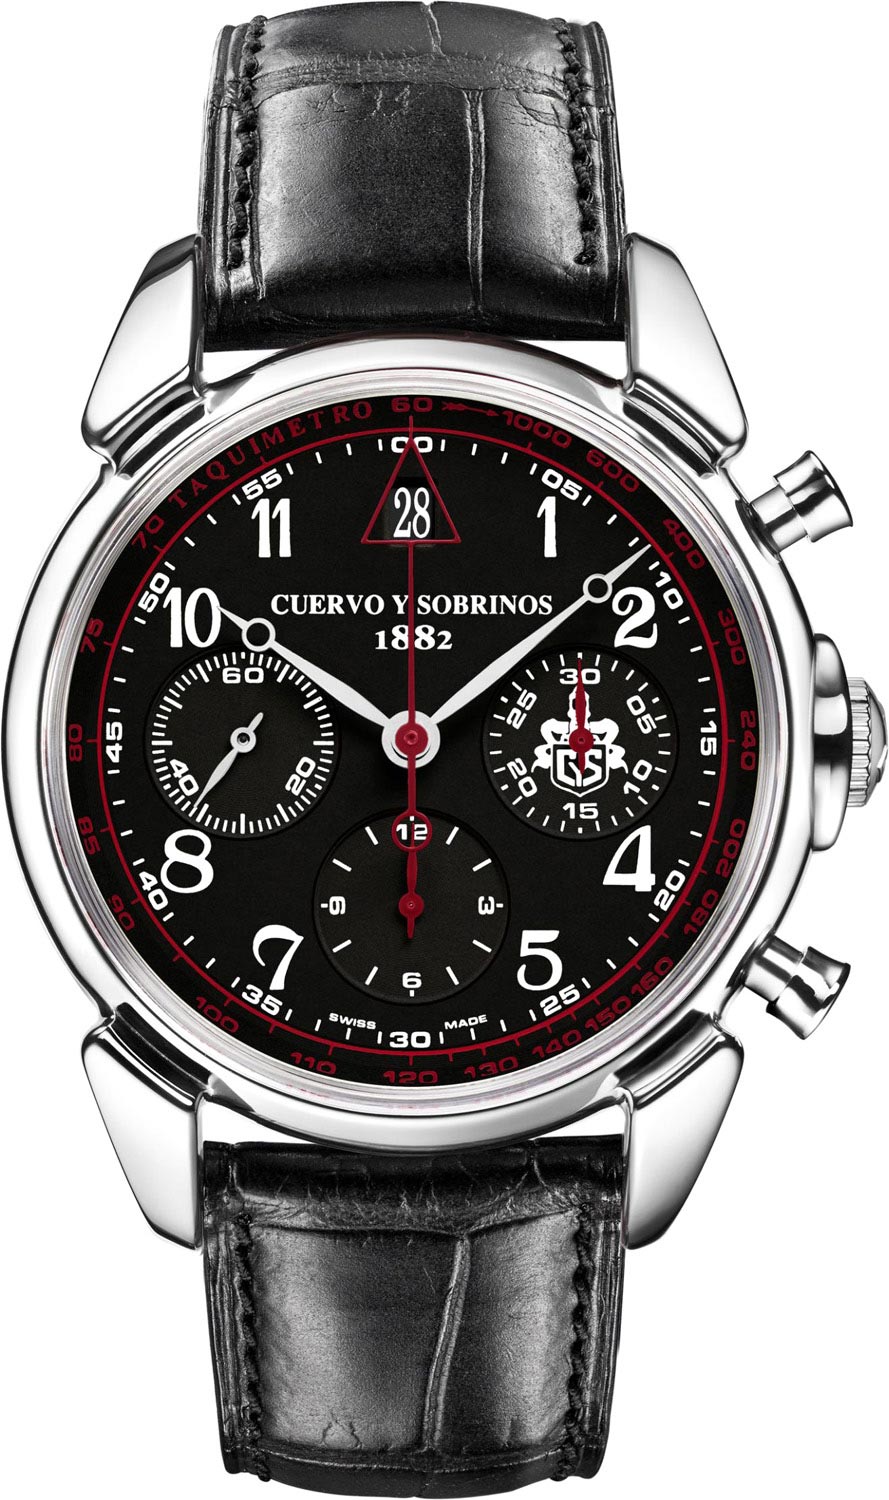 Швейцарские механические наручные часы Cuervo y Sobrinos 3142.1N с хронографом